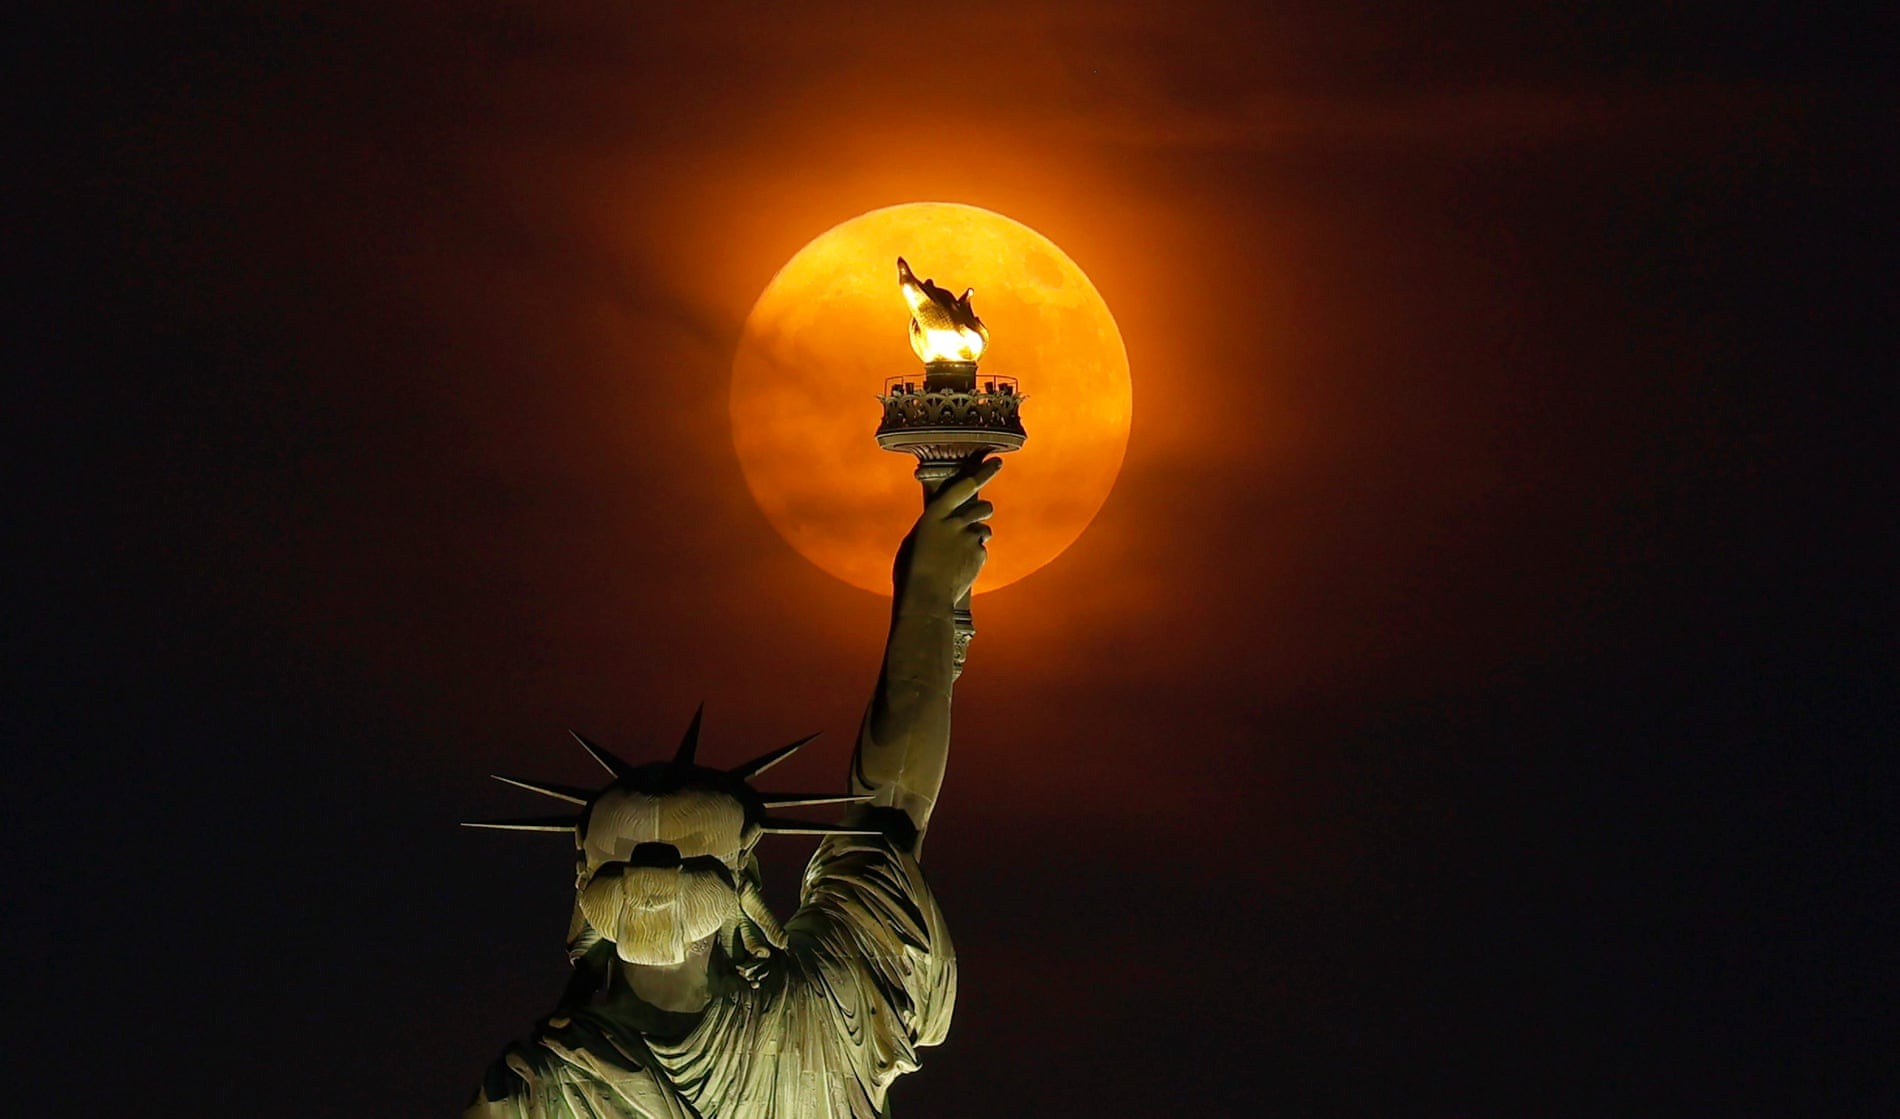 Siêu trăng mọc qua màn sương mù phía sau Tượng Nữ thần Tự do ở thành phố New York, Mỹ. (Ảnh: Getty Images)